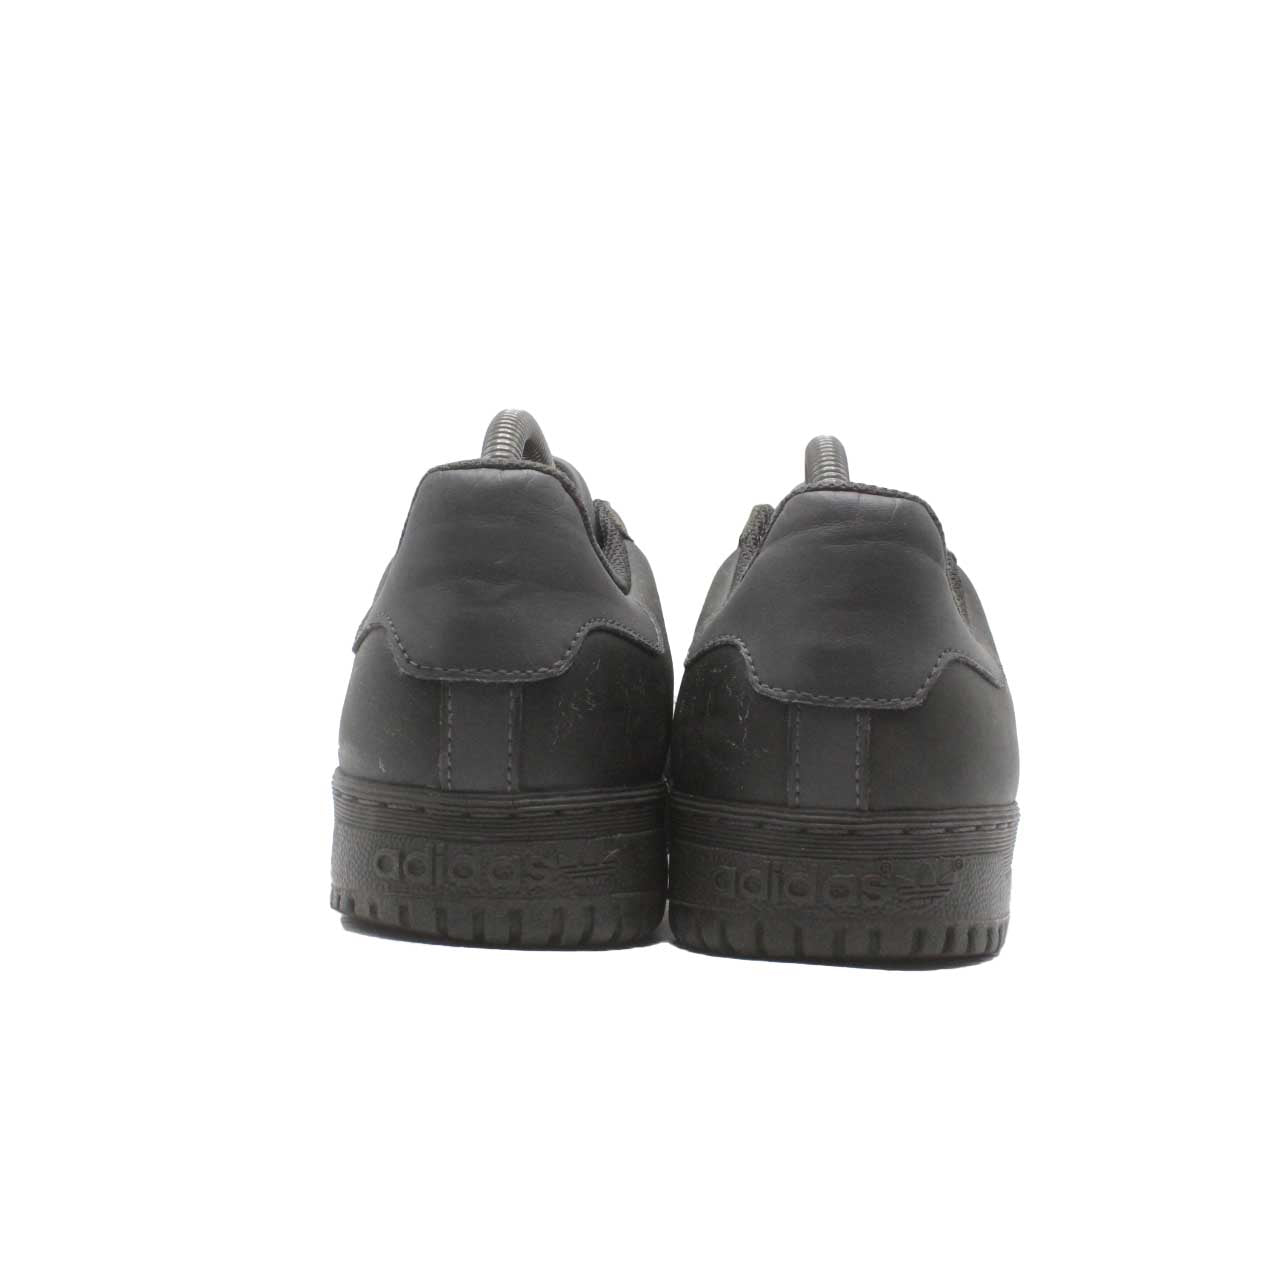 Adidas Yeezy Powerphase Casual Shoe